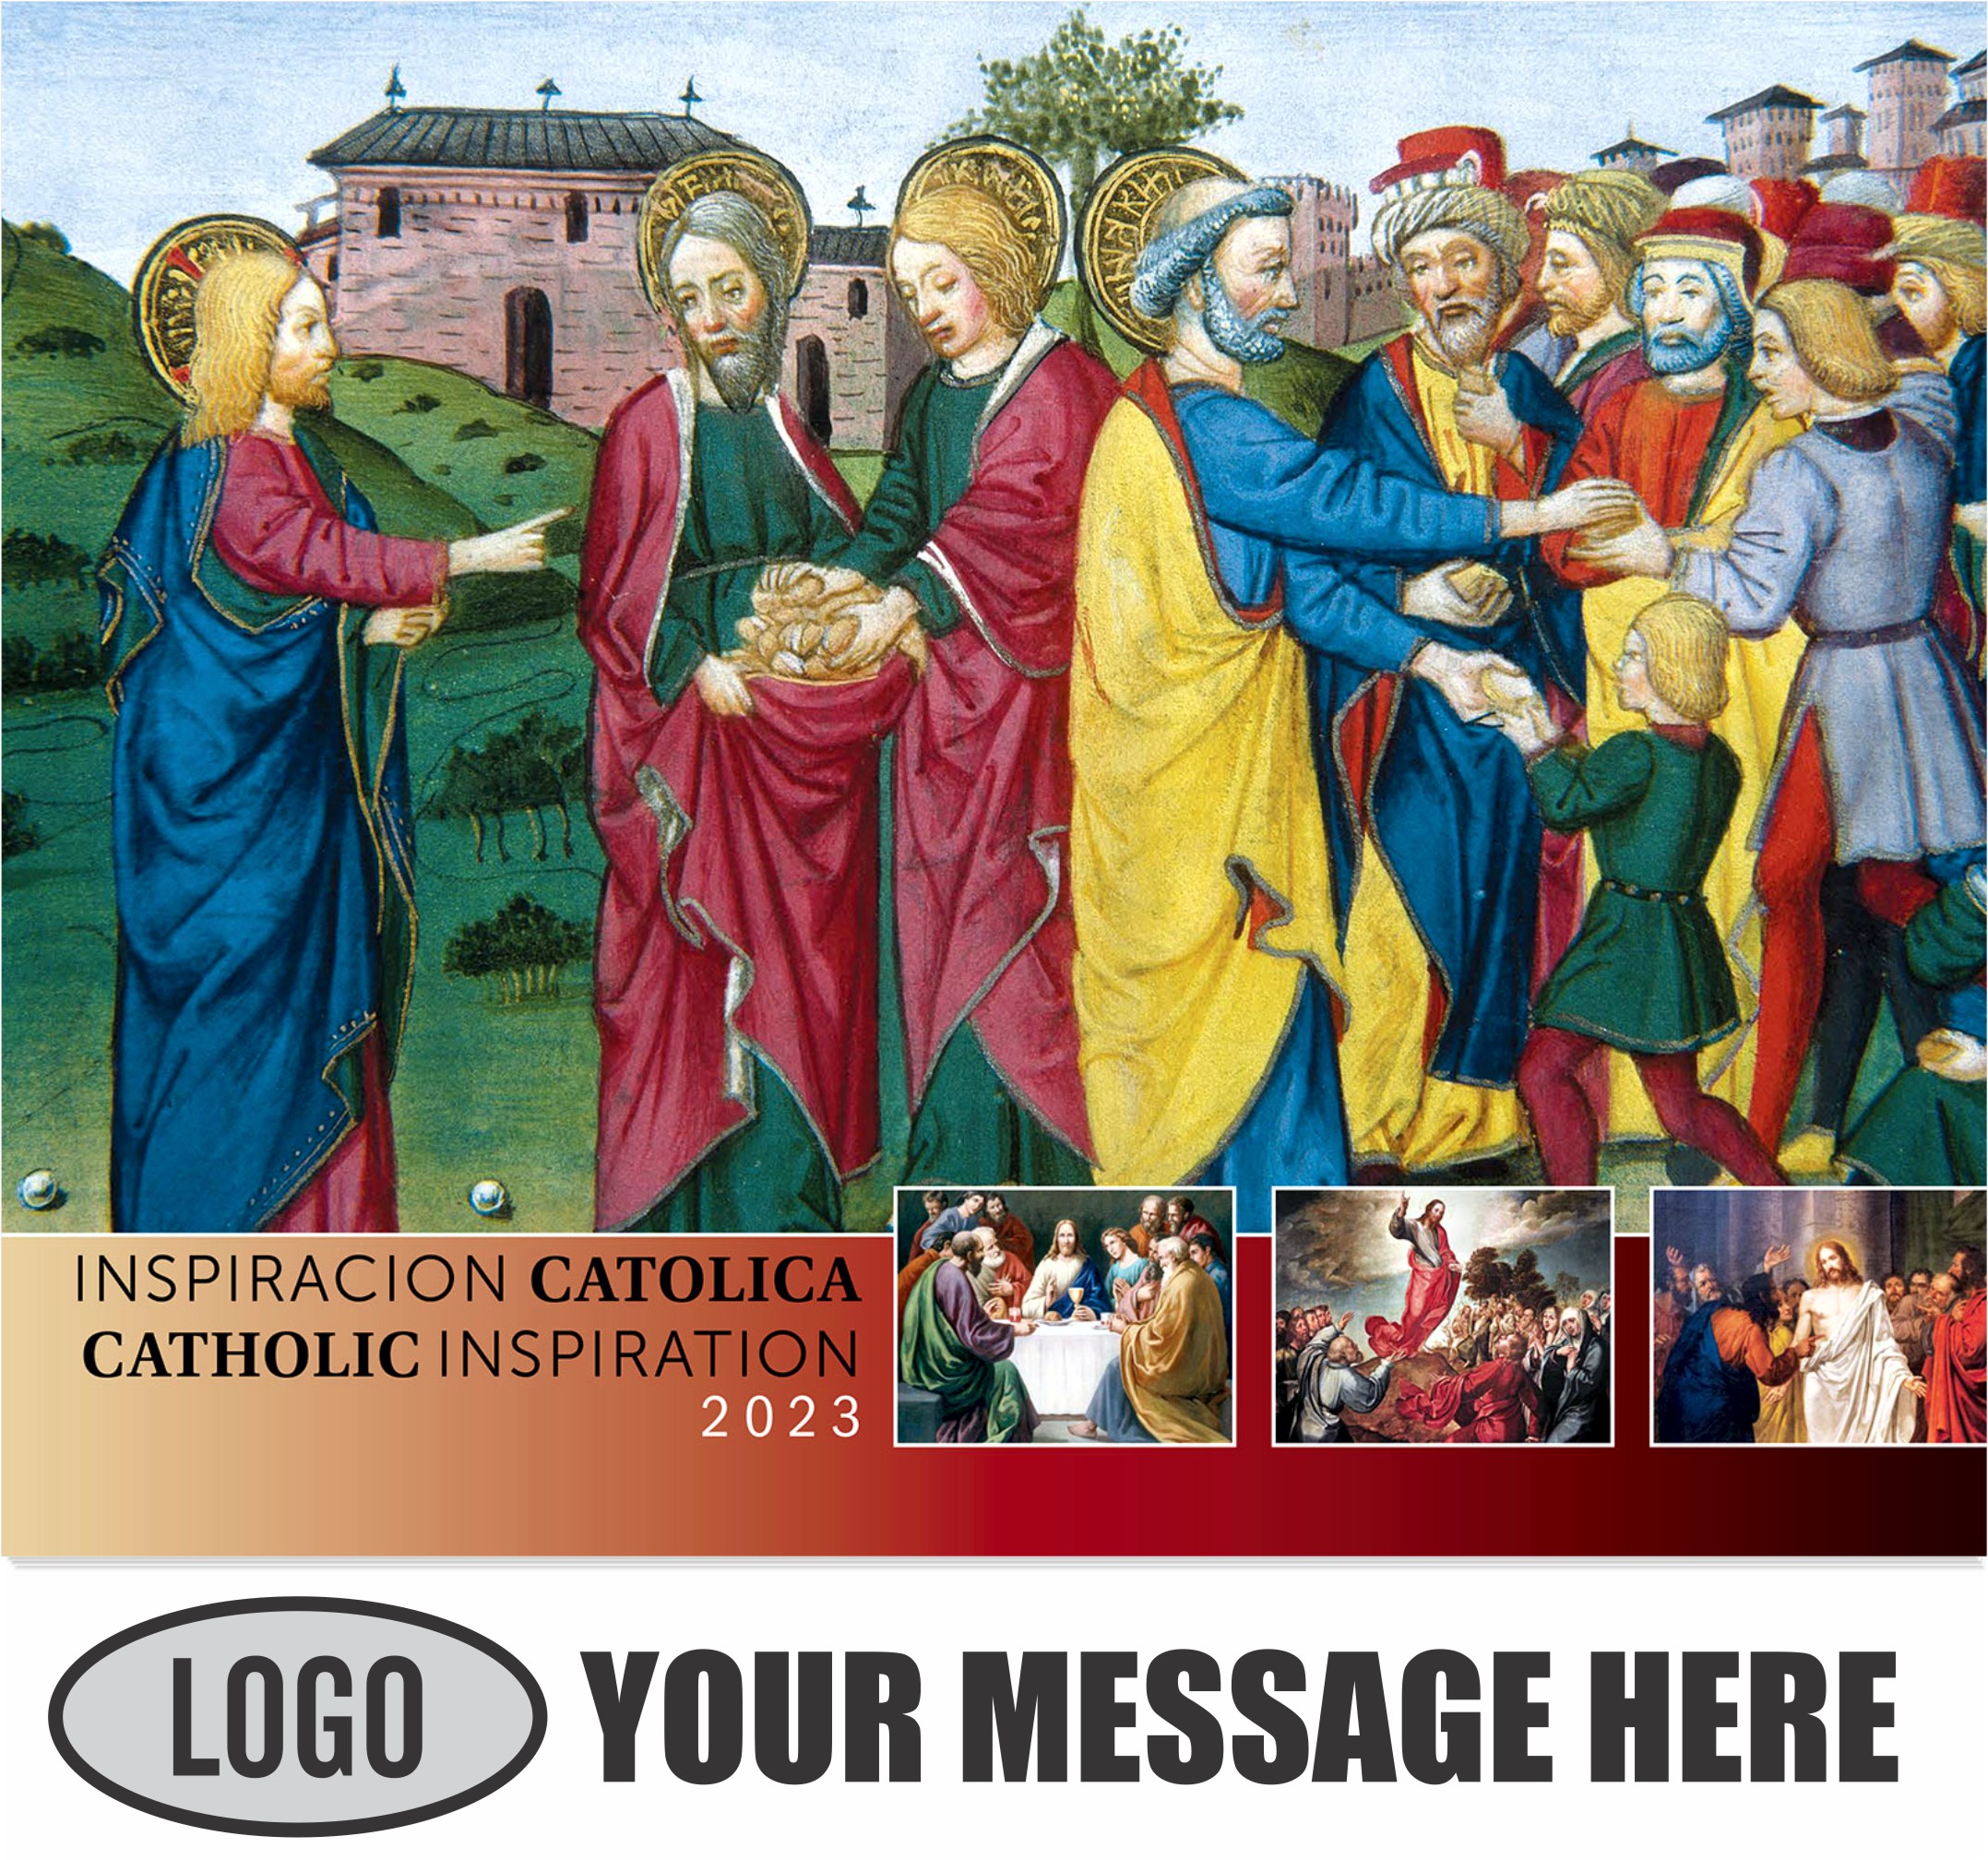 2023 Catholic Inspiration (Spanish-English bilingual) Promotional Calendar